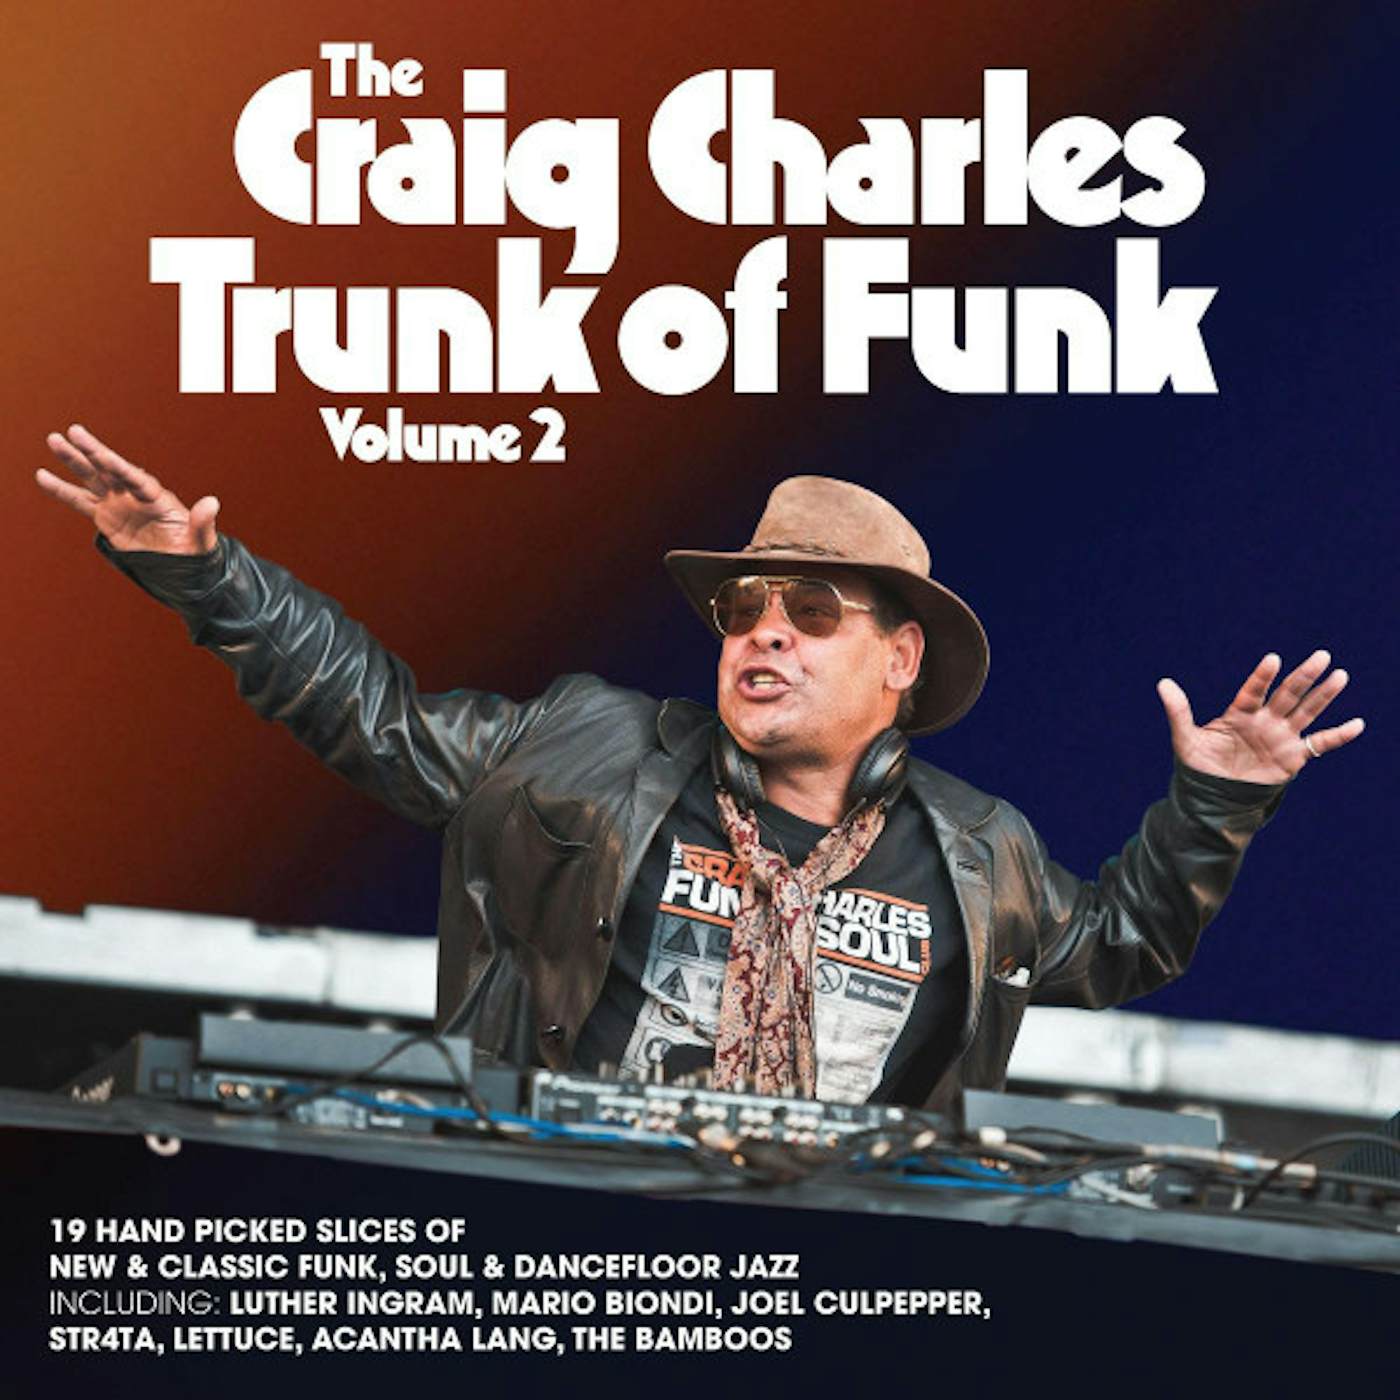 Craig Charles Trunk Of Funk Vol. 2 Vinyl Record